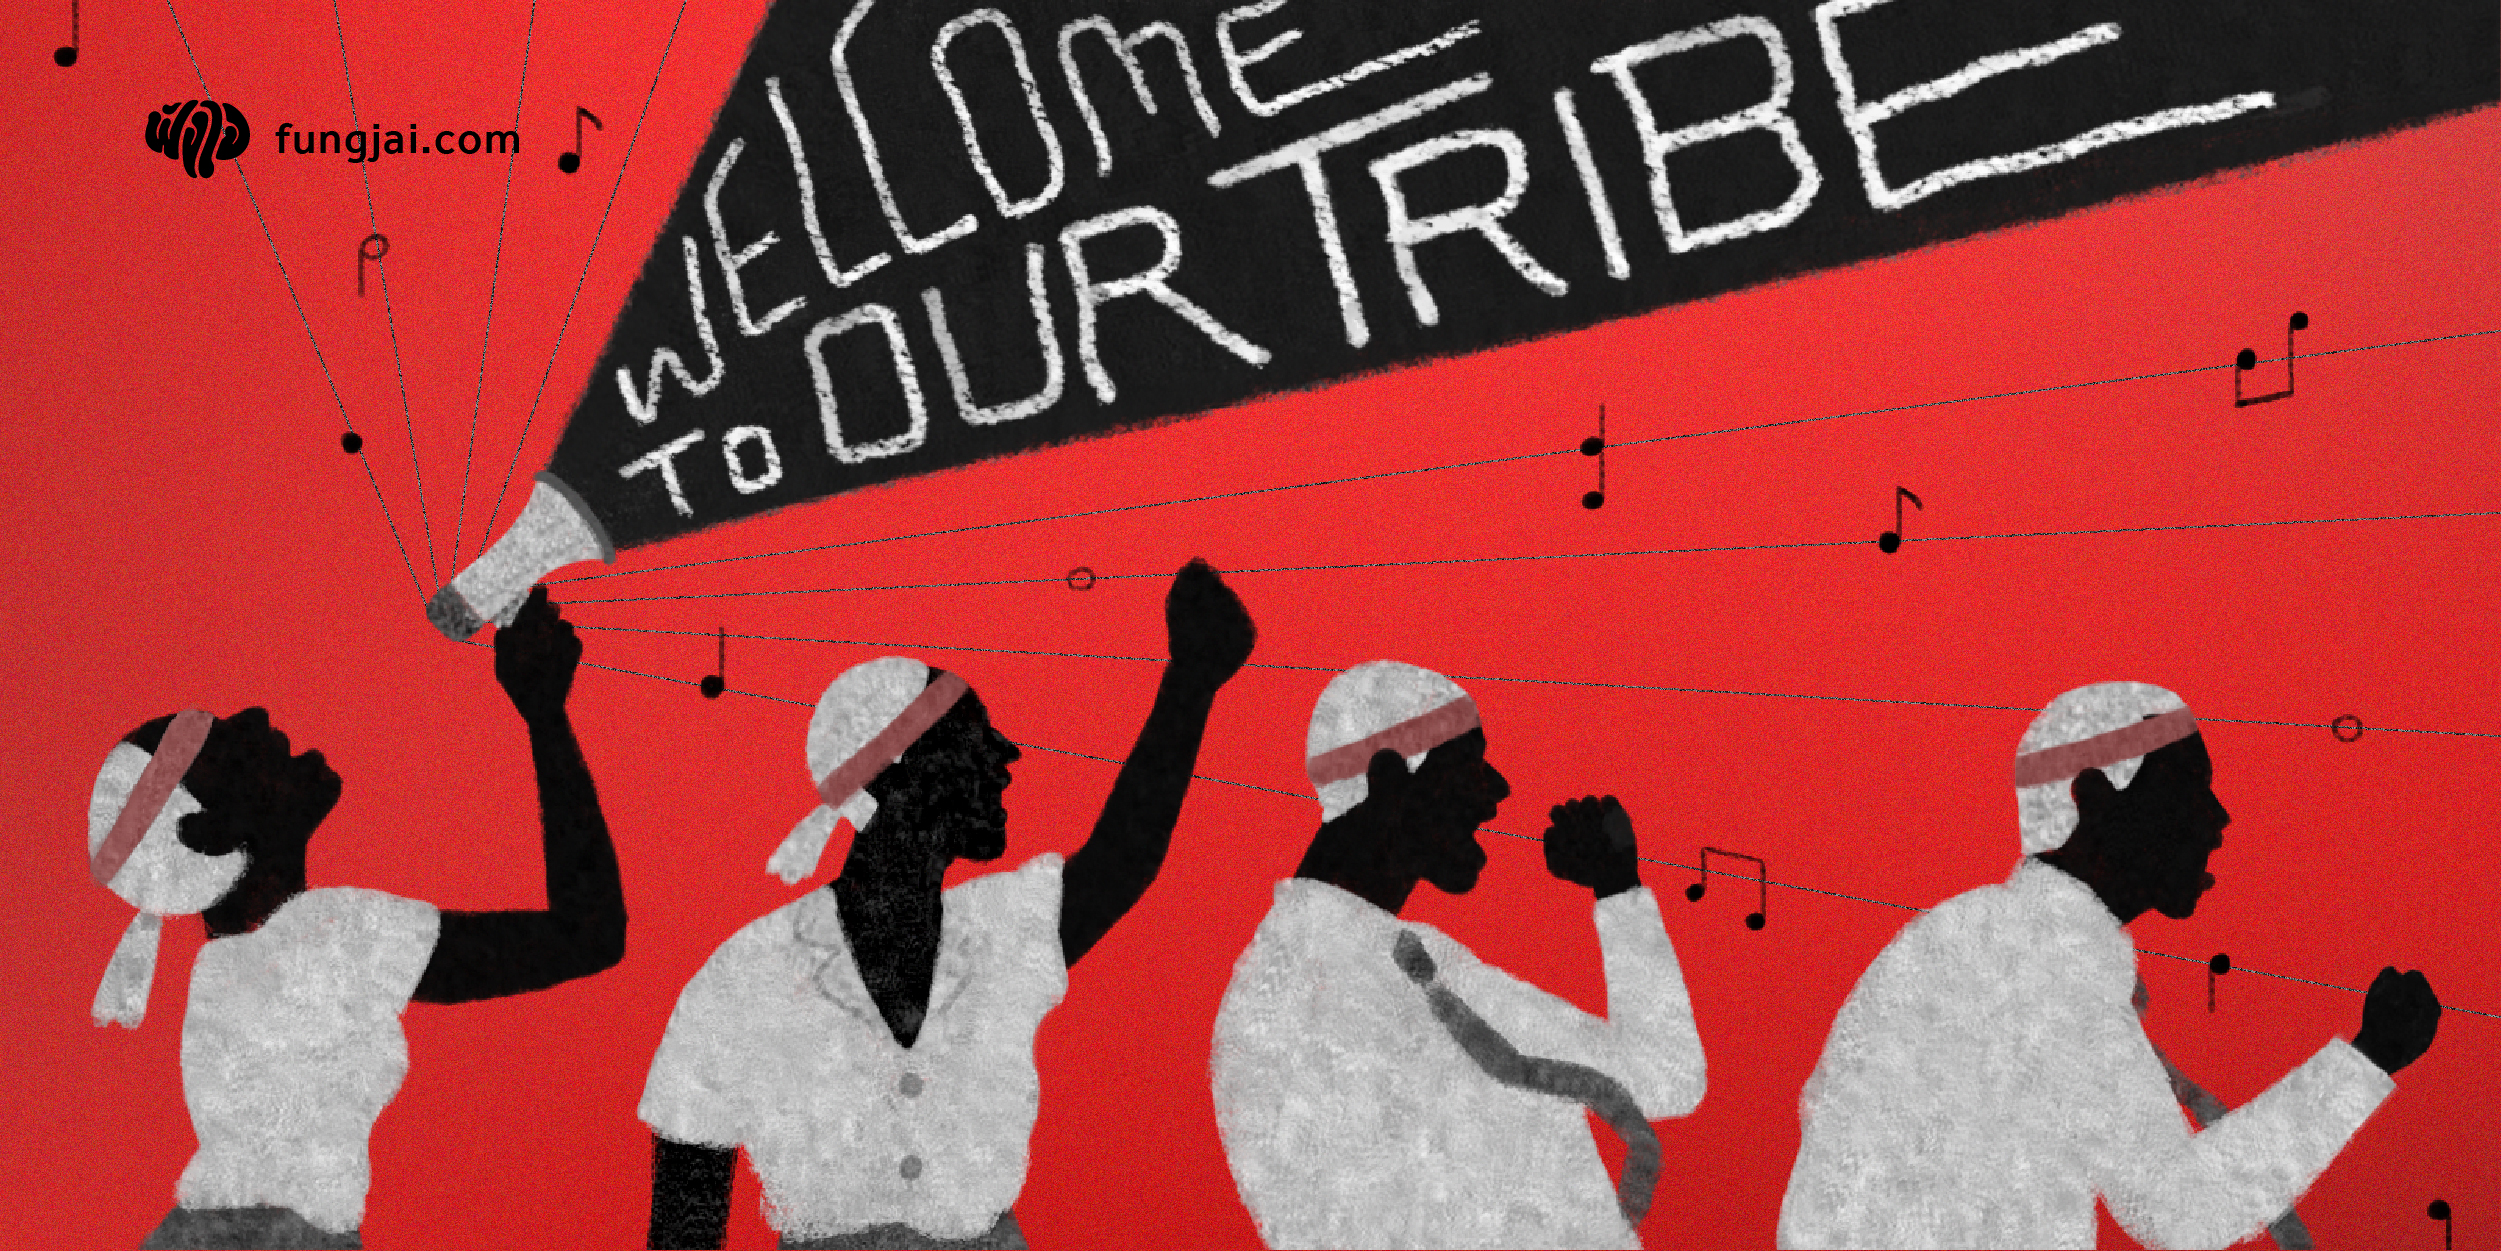 Welcome to Our Tribe! เพลงของเรา บูมของเรา เผ่าของเรา